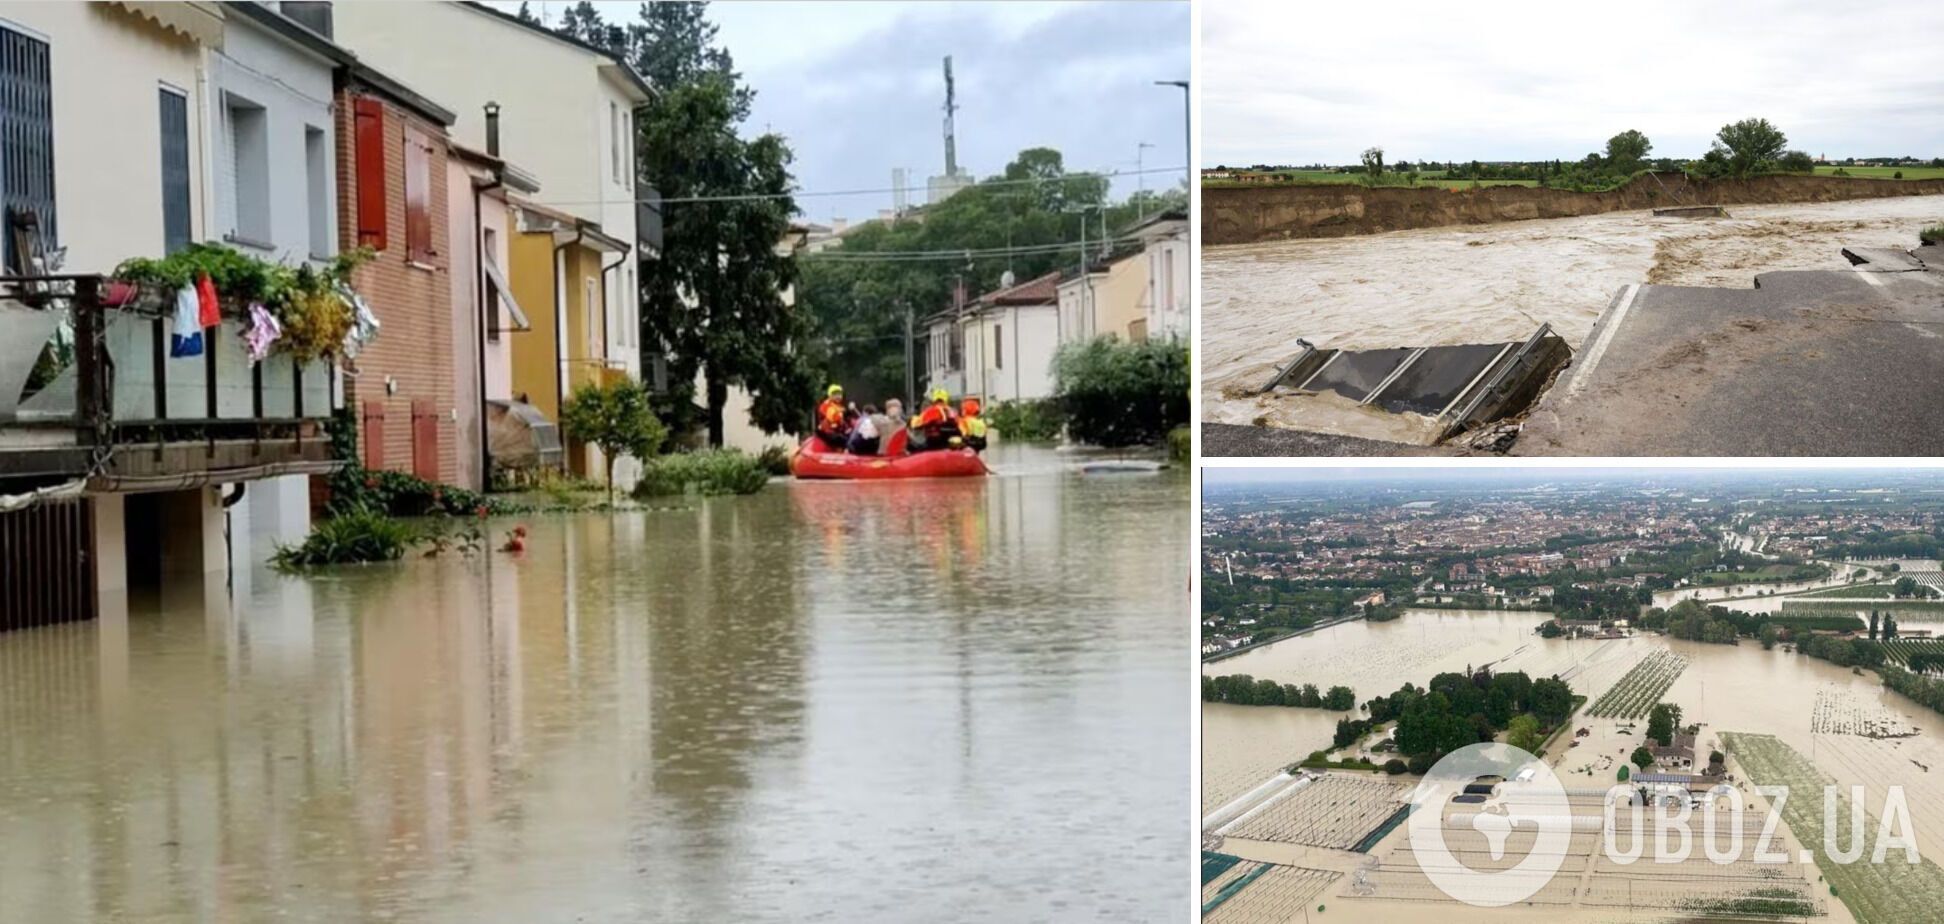 Италию накрыло разрушительное наводнение: есть погибшие, тысячи людей эвакуированы. Фото и видео